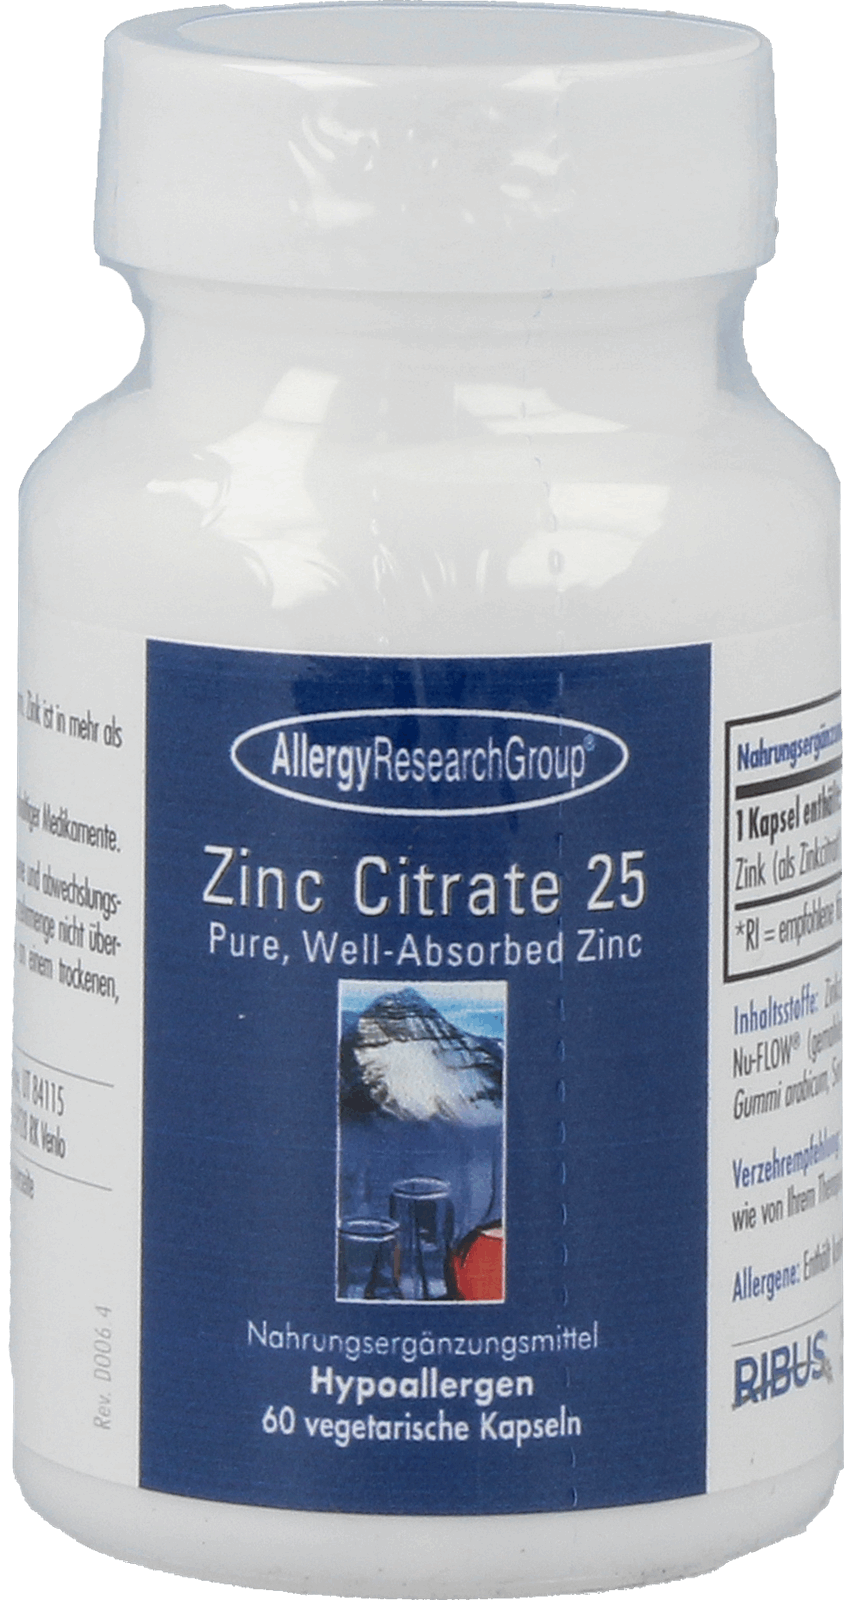 Zinc Citrate 25 